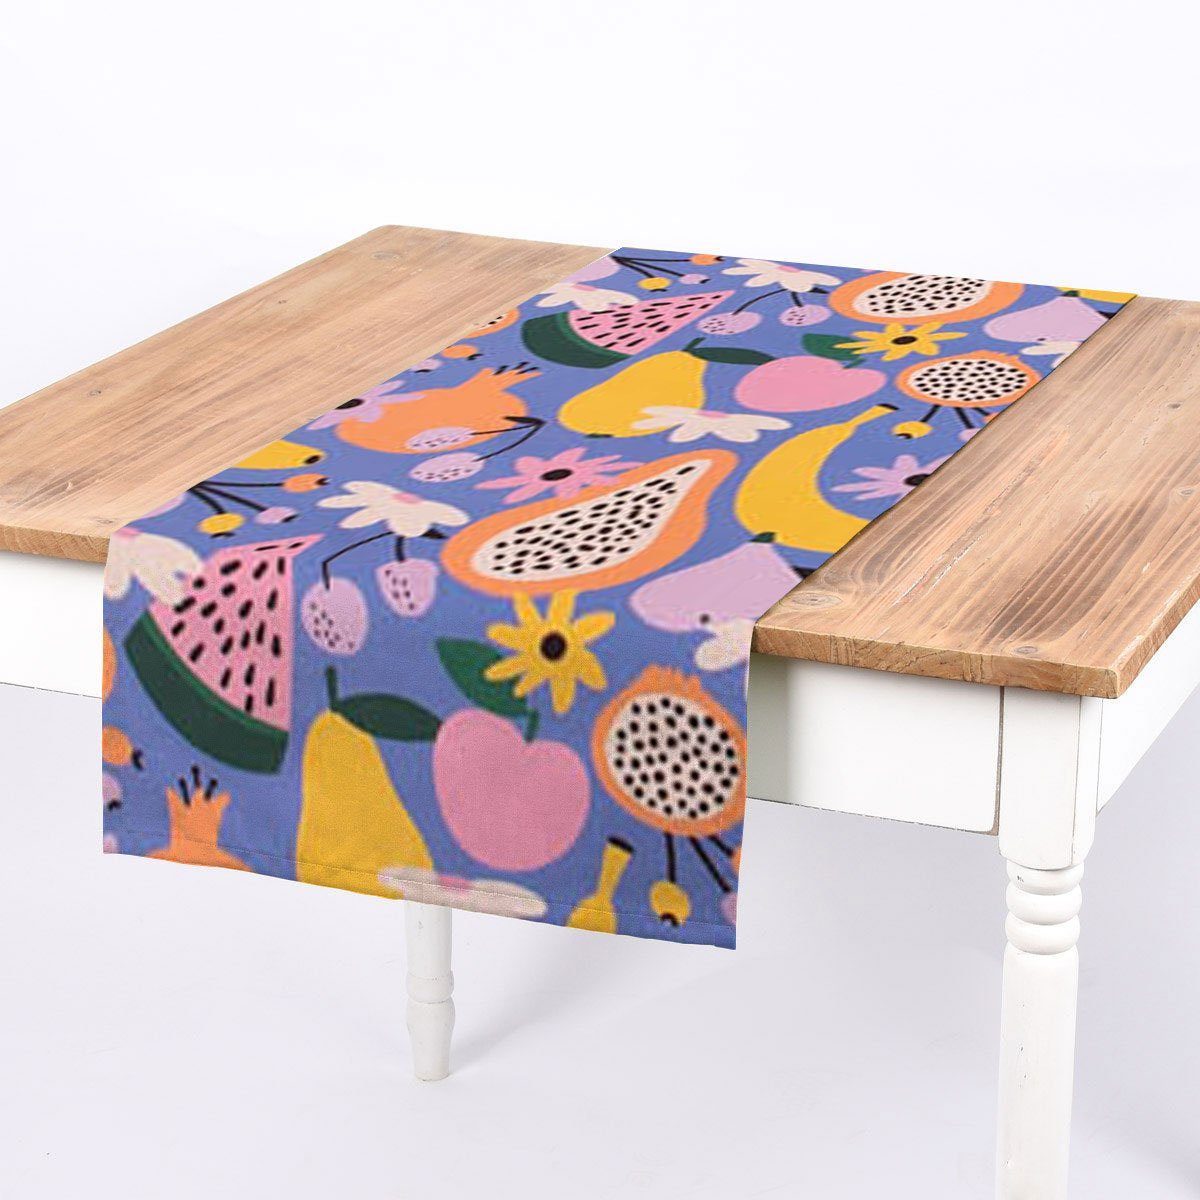 SCHÖNER LEBEN. Tischläufer SCHÖNER LEBEN. Tischläufer aus Baumwolle Retro Pop Obst Blumen lila b, Digitaldruck